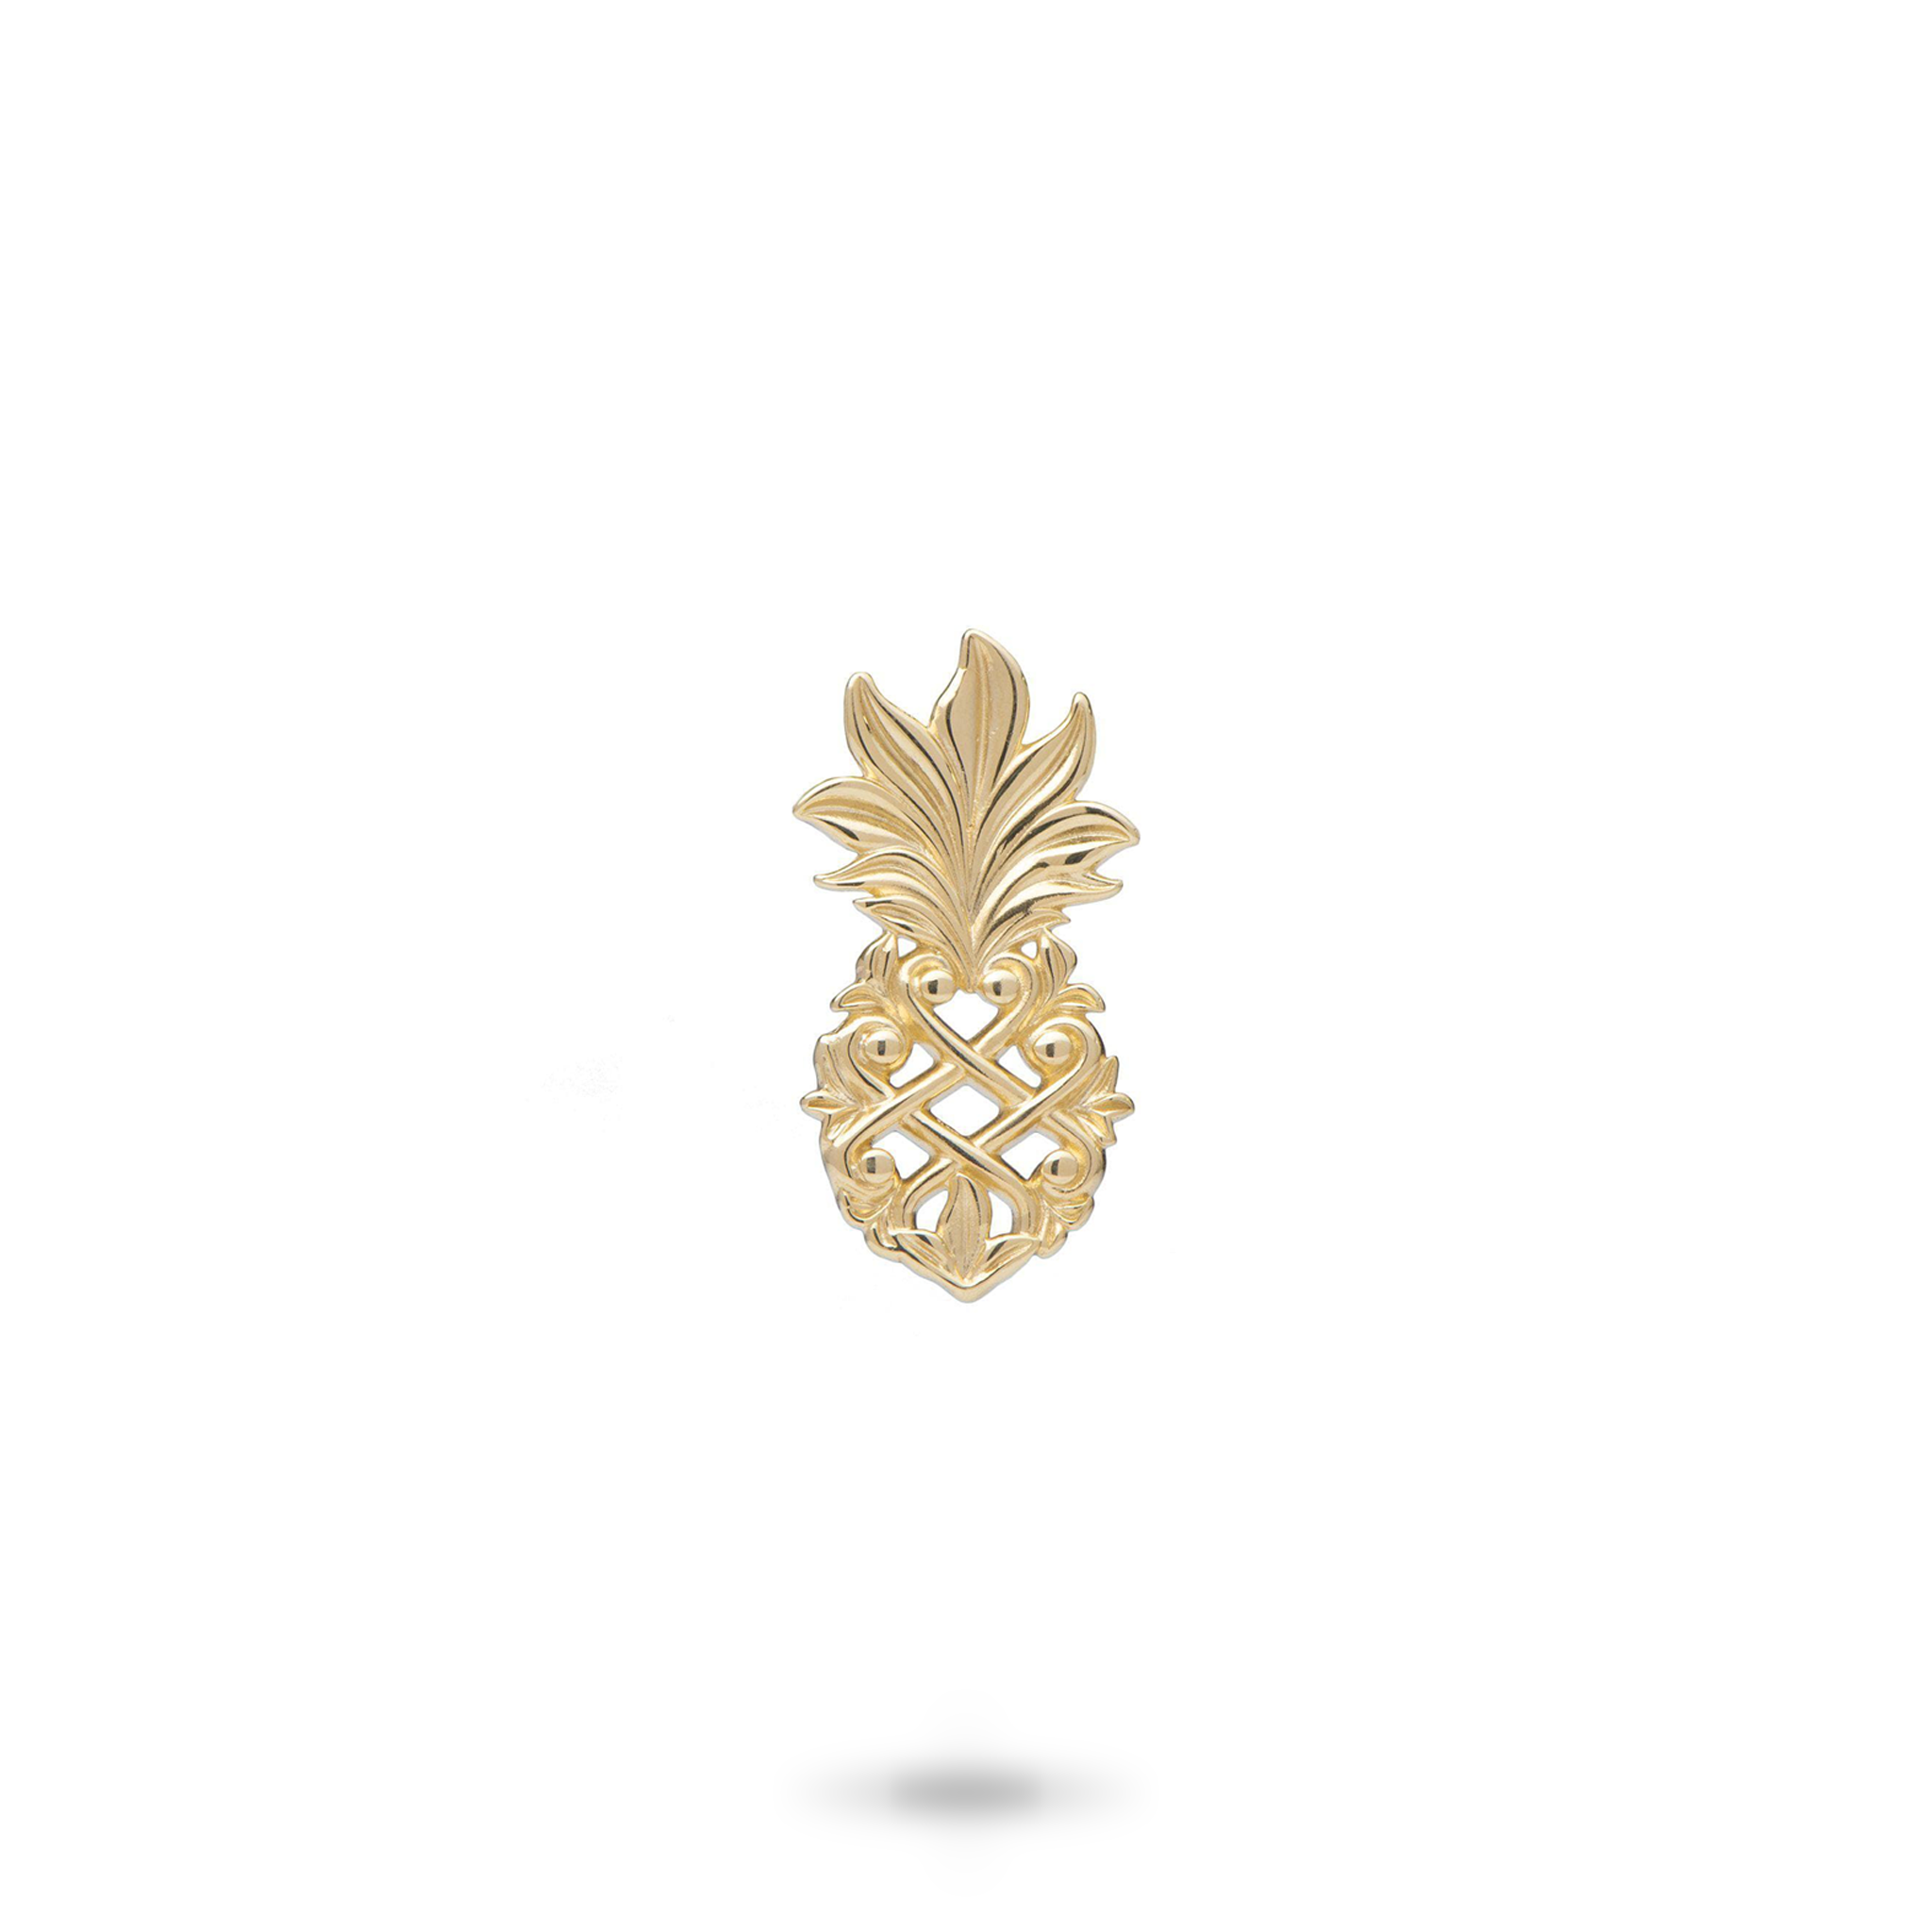 Living Heirloom Pineapple Pendant in Gold - 18mm